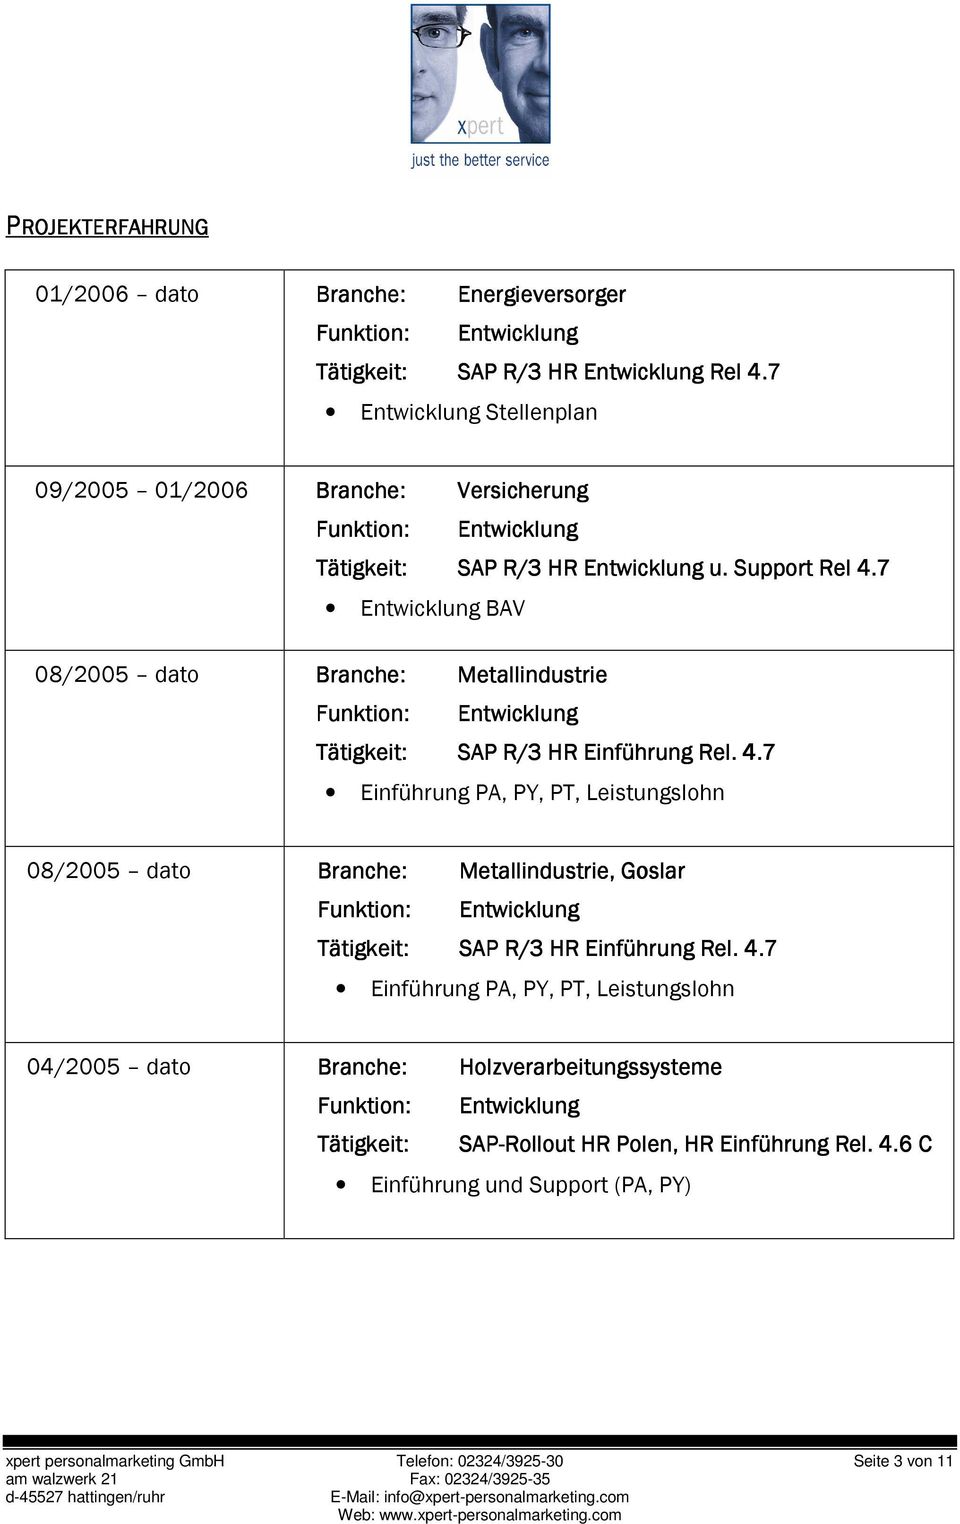 4.7 Einführung PA, PY, PT, Leistungslohn 04/2005 dato Branche: Holzverarbeitungssysteme SAP-Rollou Rollout t HR Polen, HR Einführung Rel. 4.